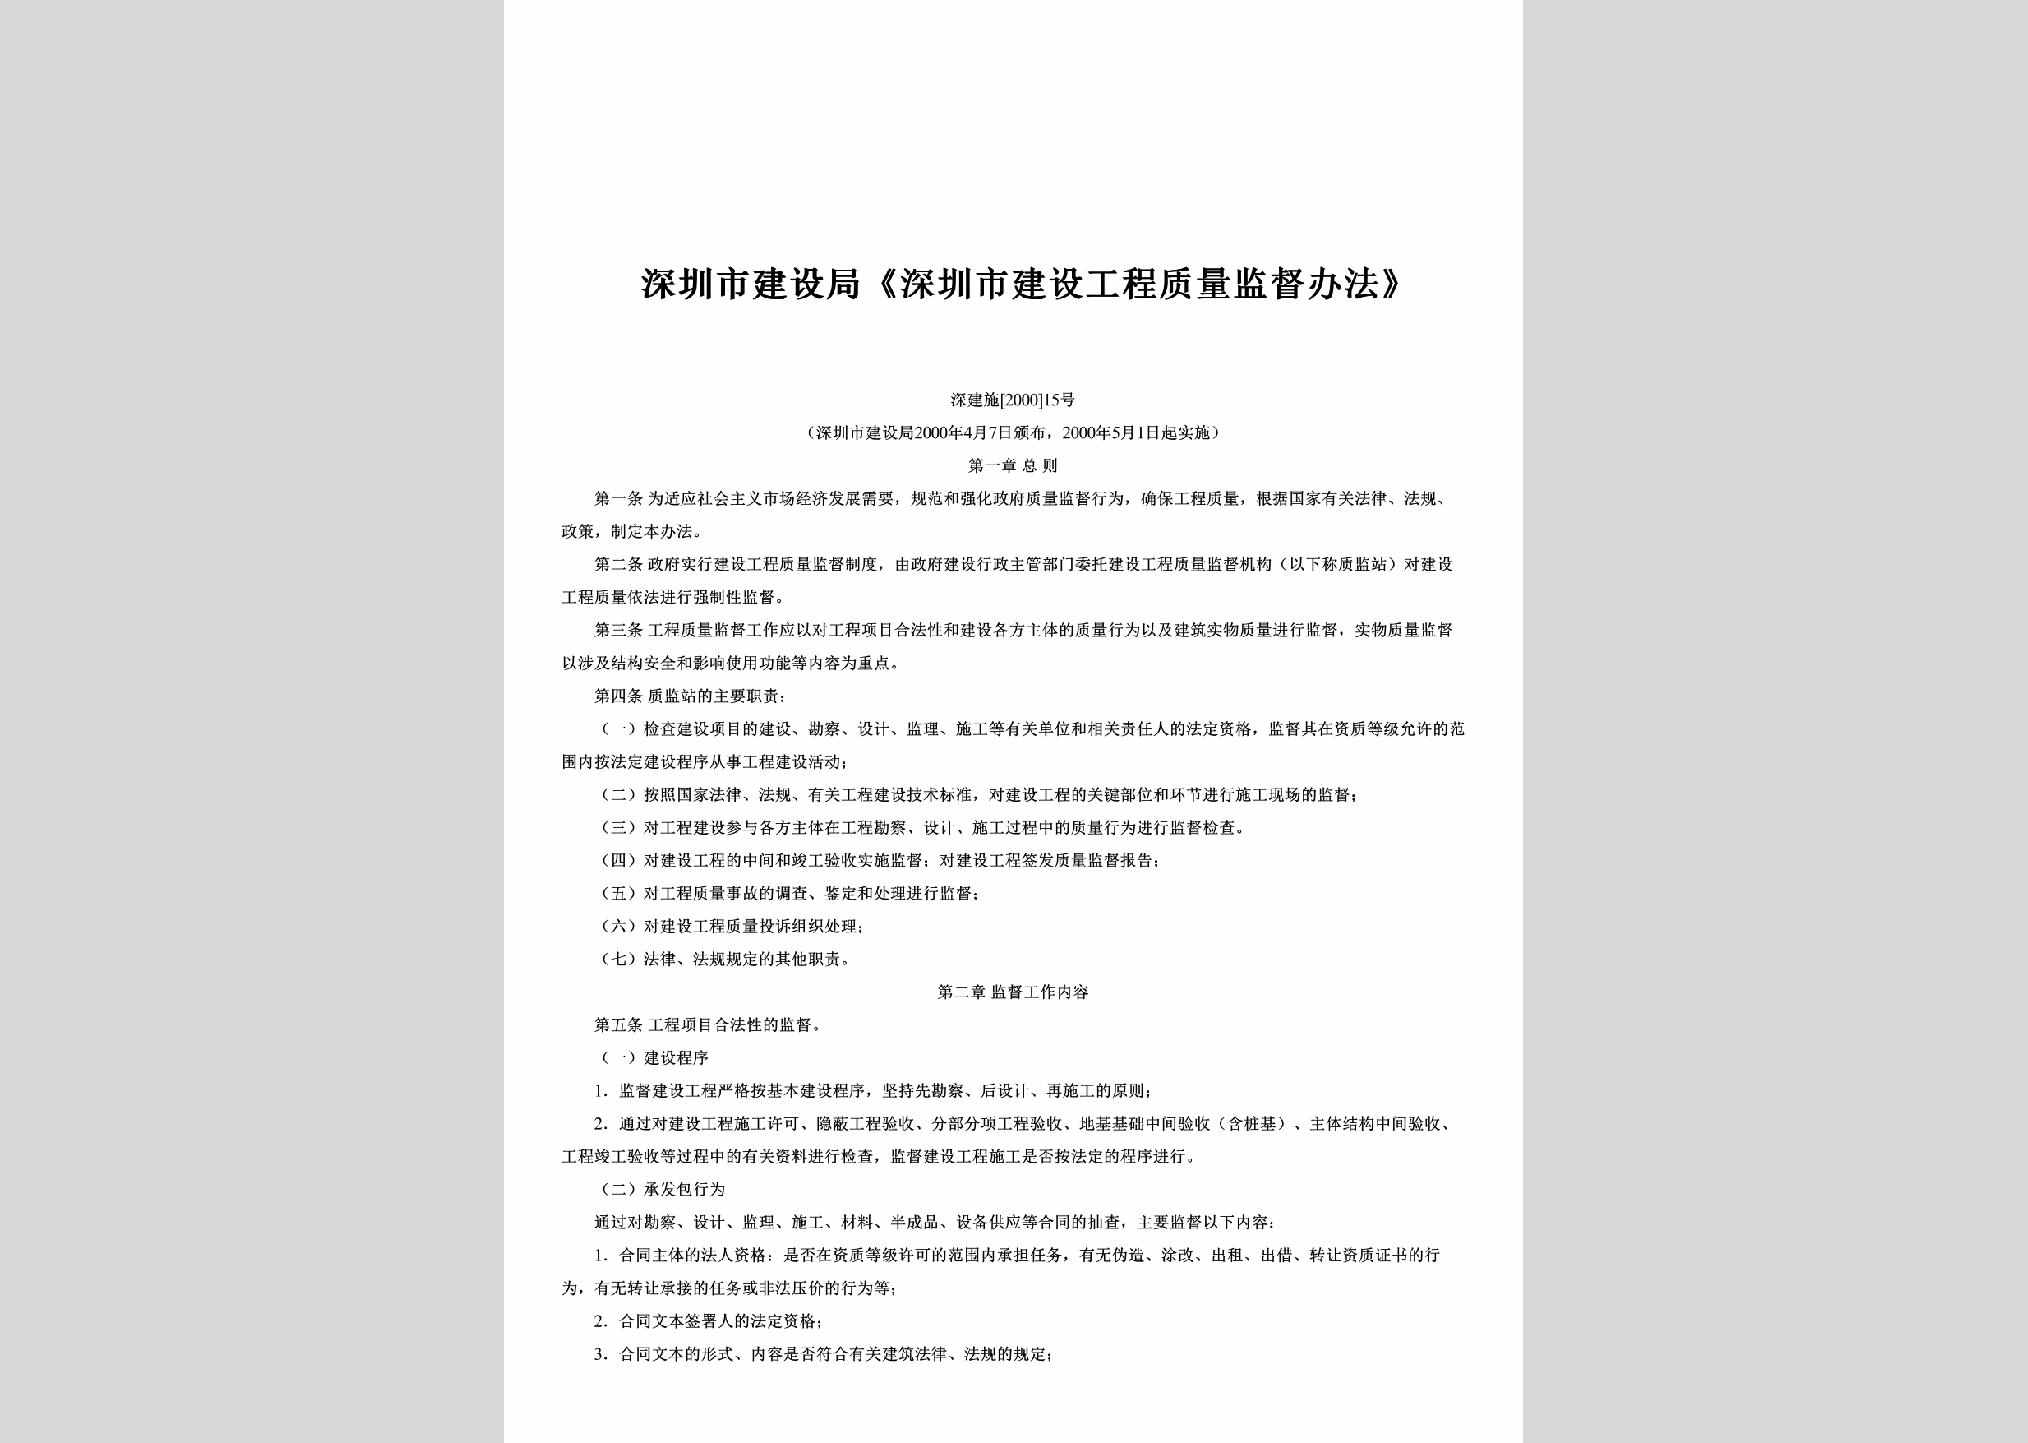 深建施[2000]15号：《深圳市建设工程质量监督办法》